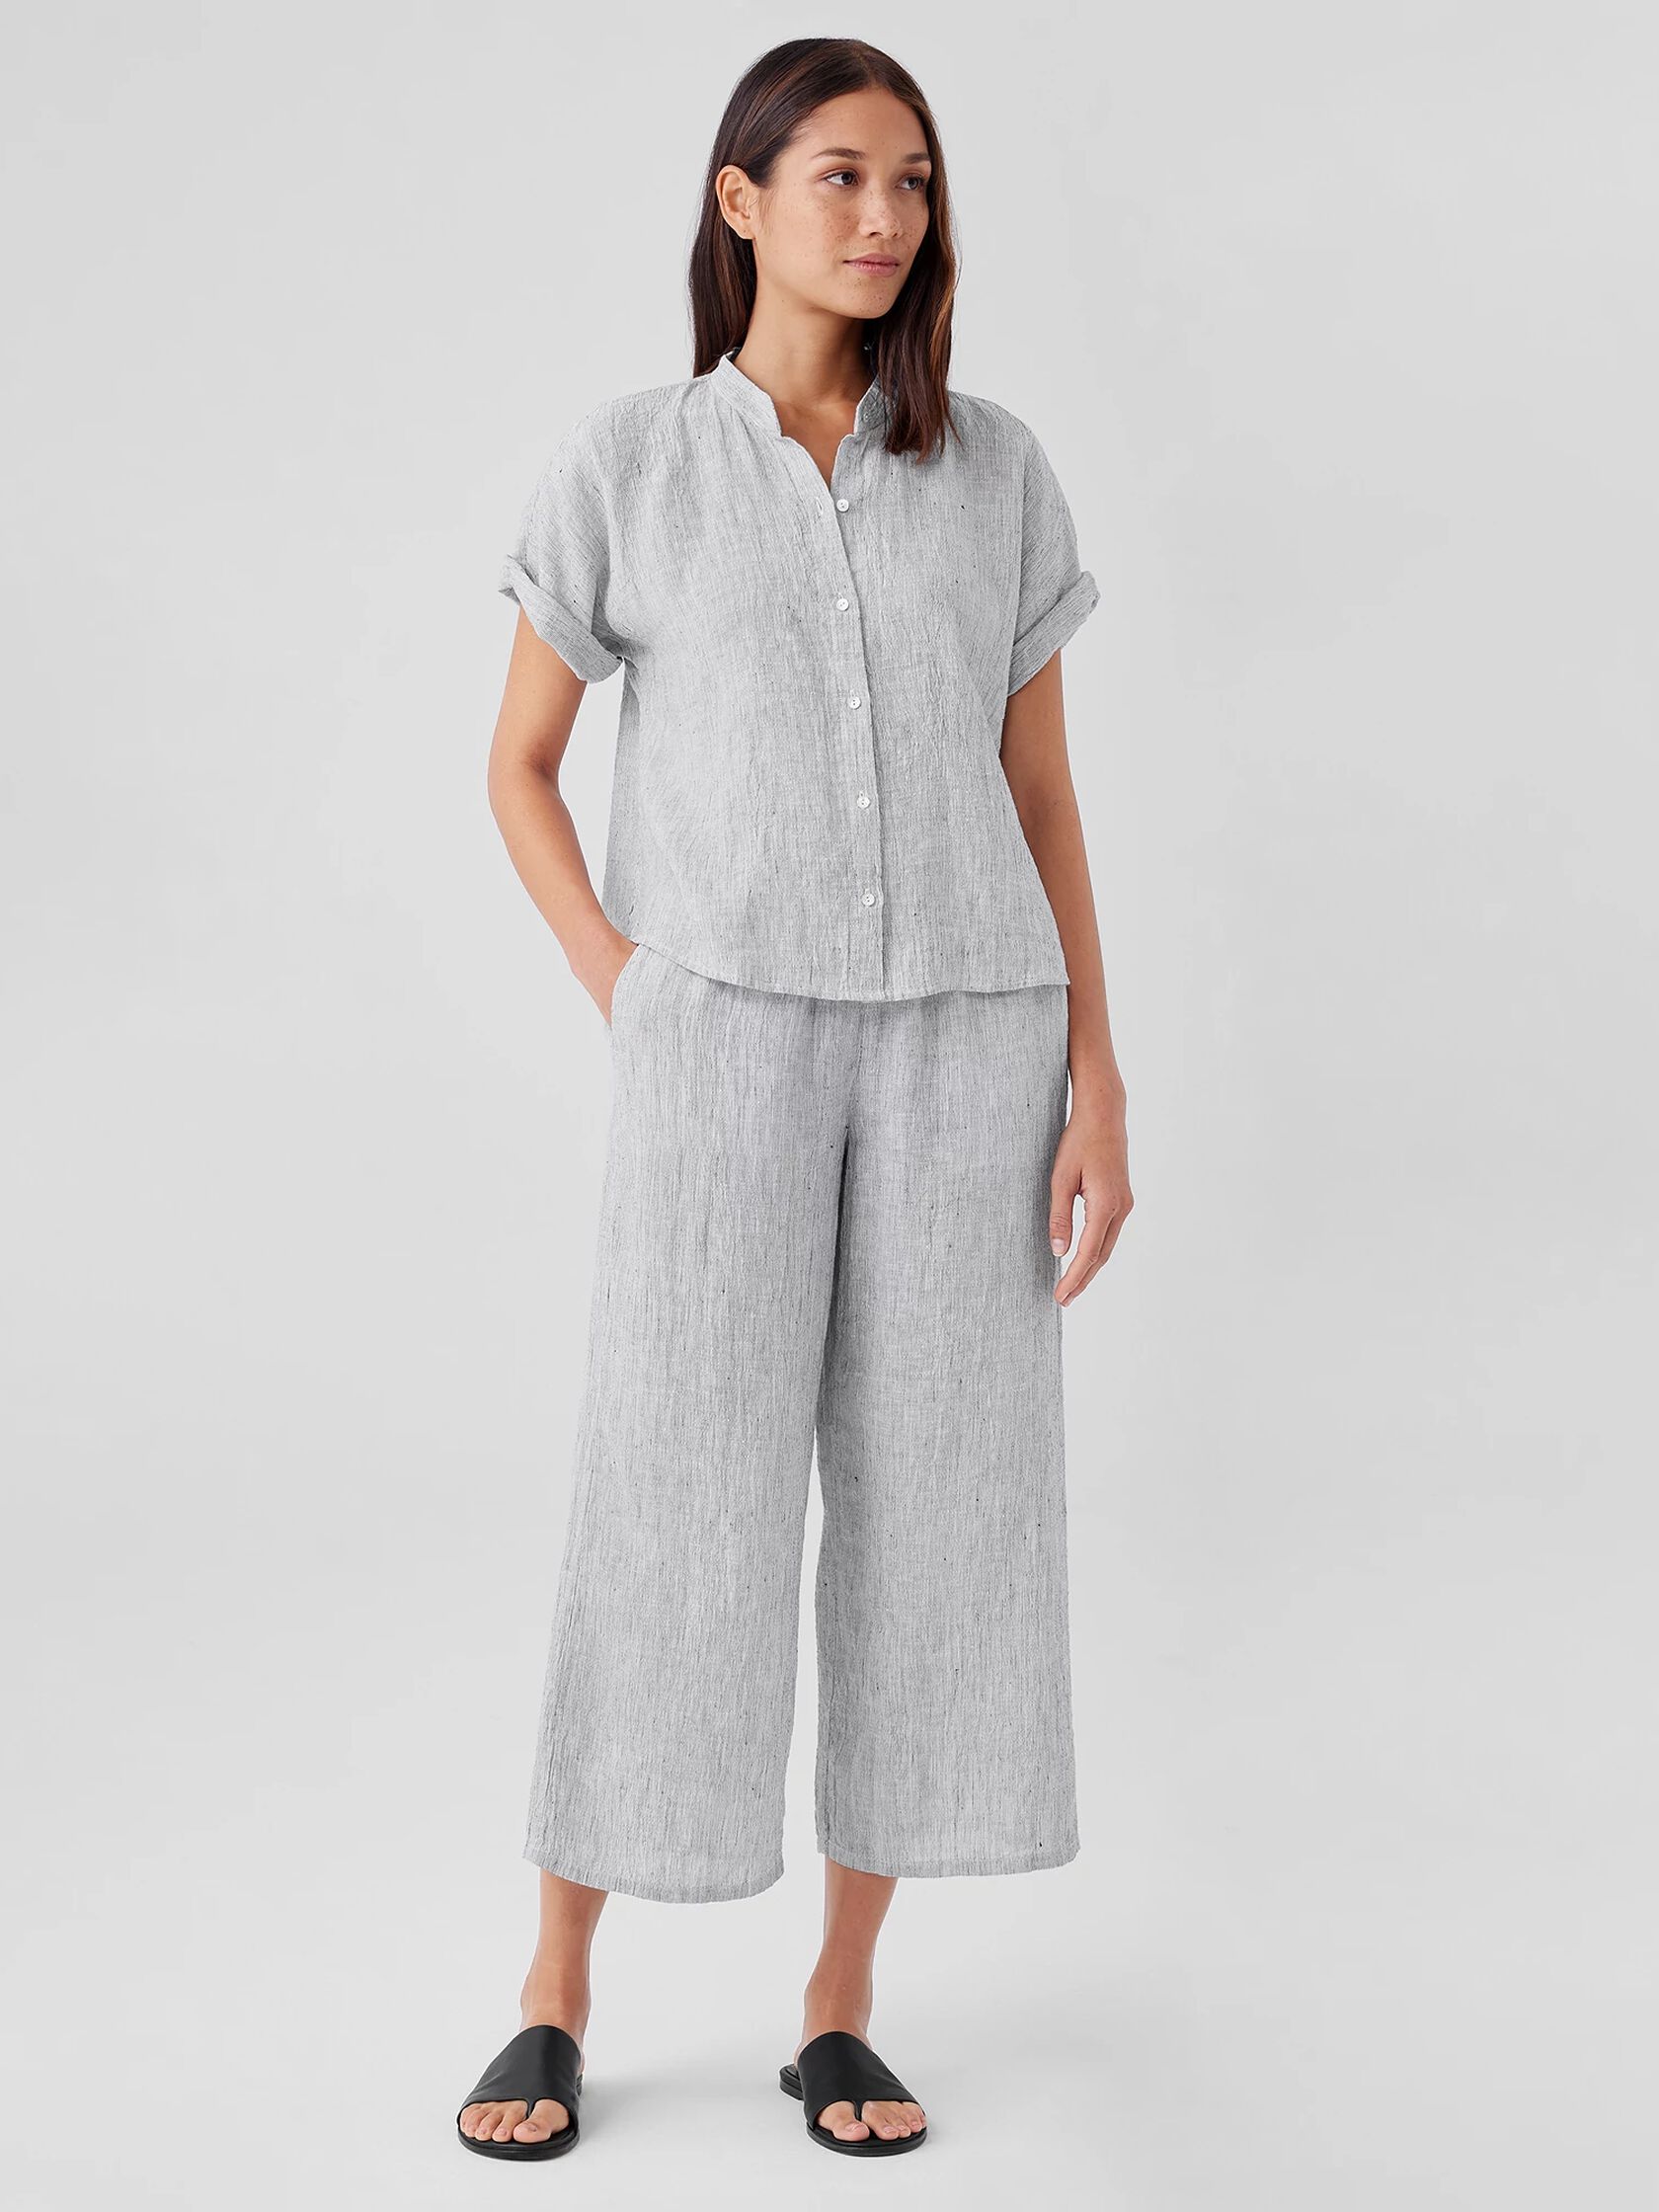 Crinkled Organic Linen Stripe Short-Sleeve Shirt